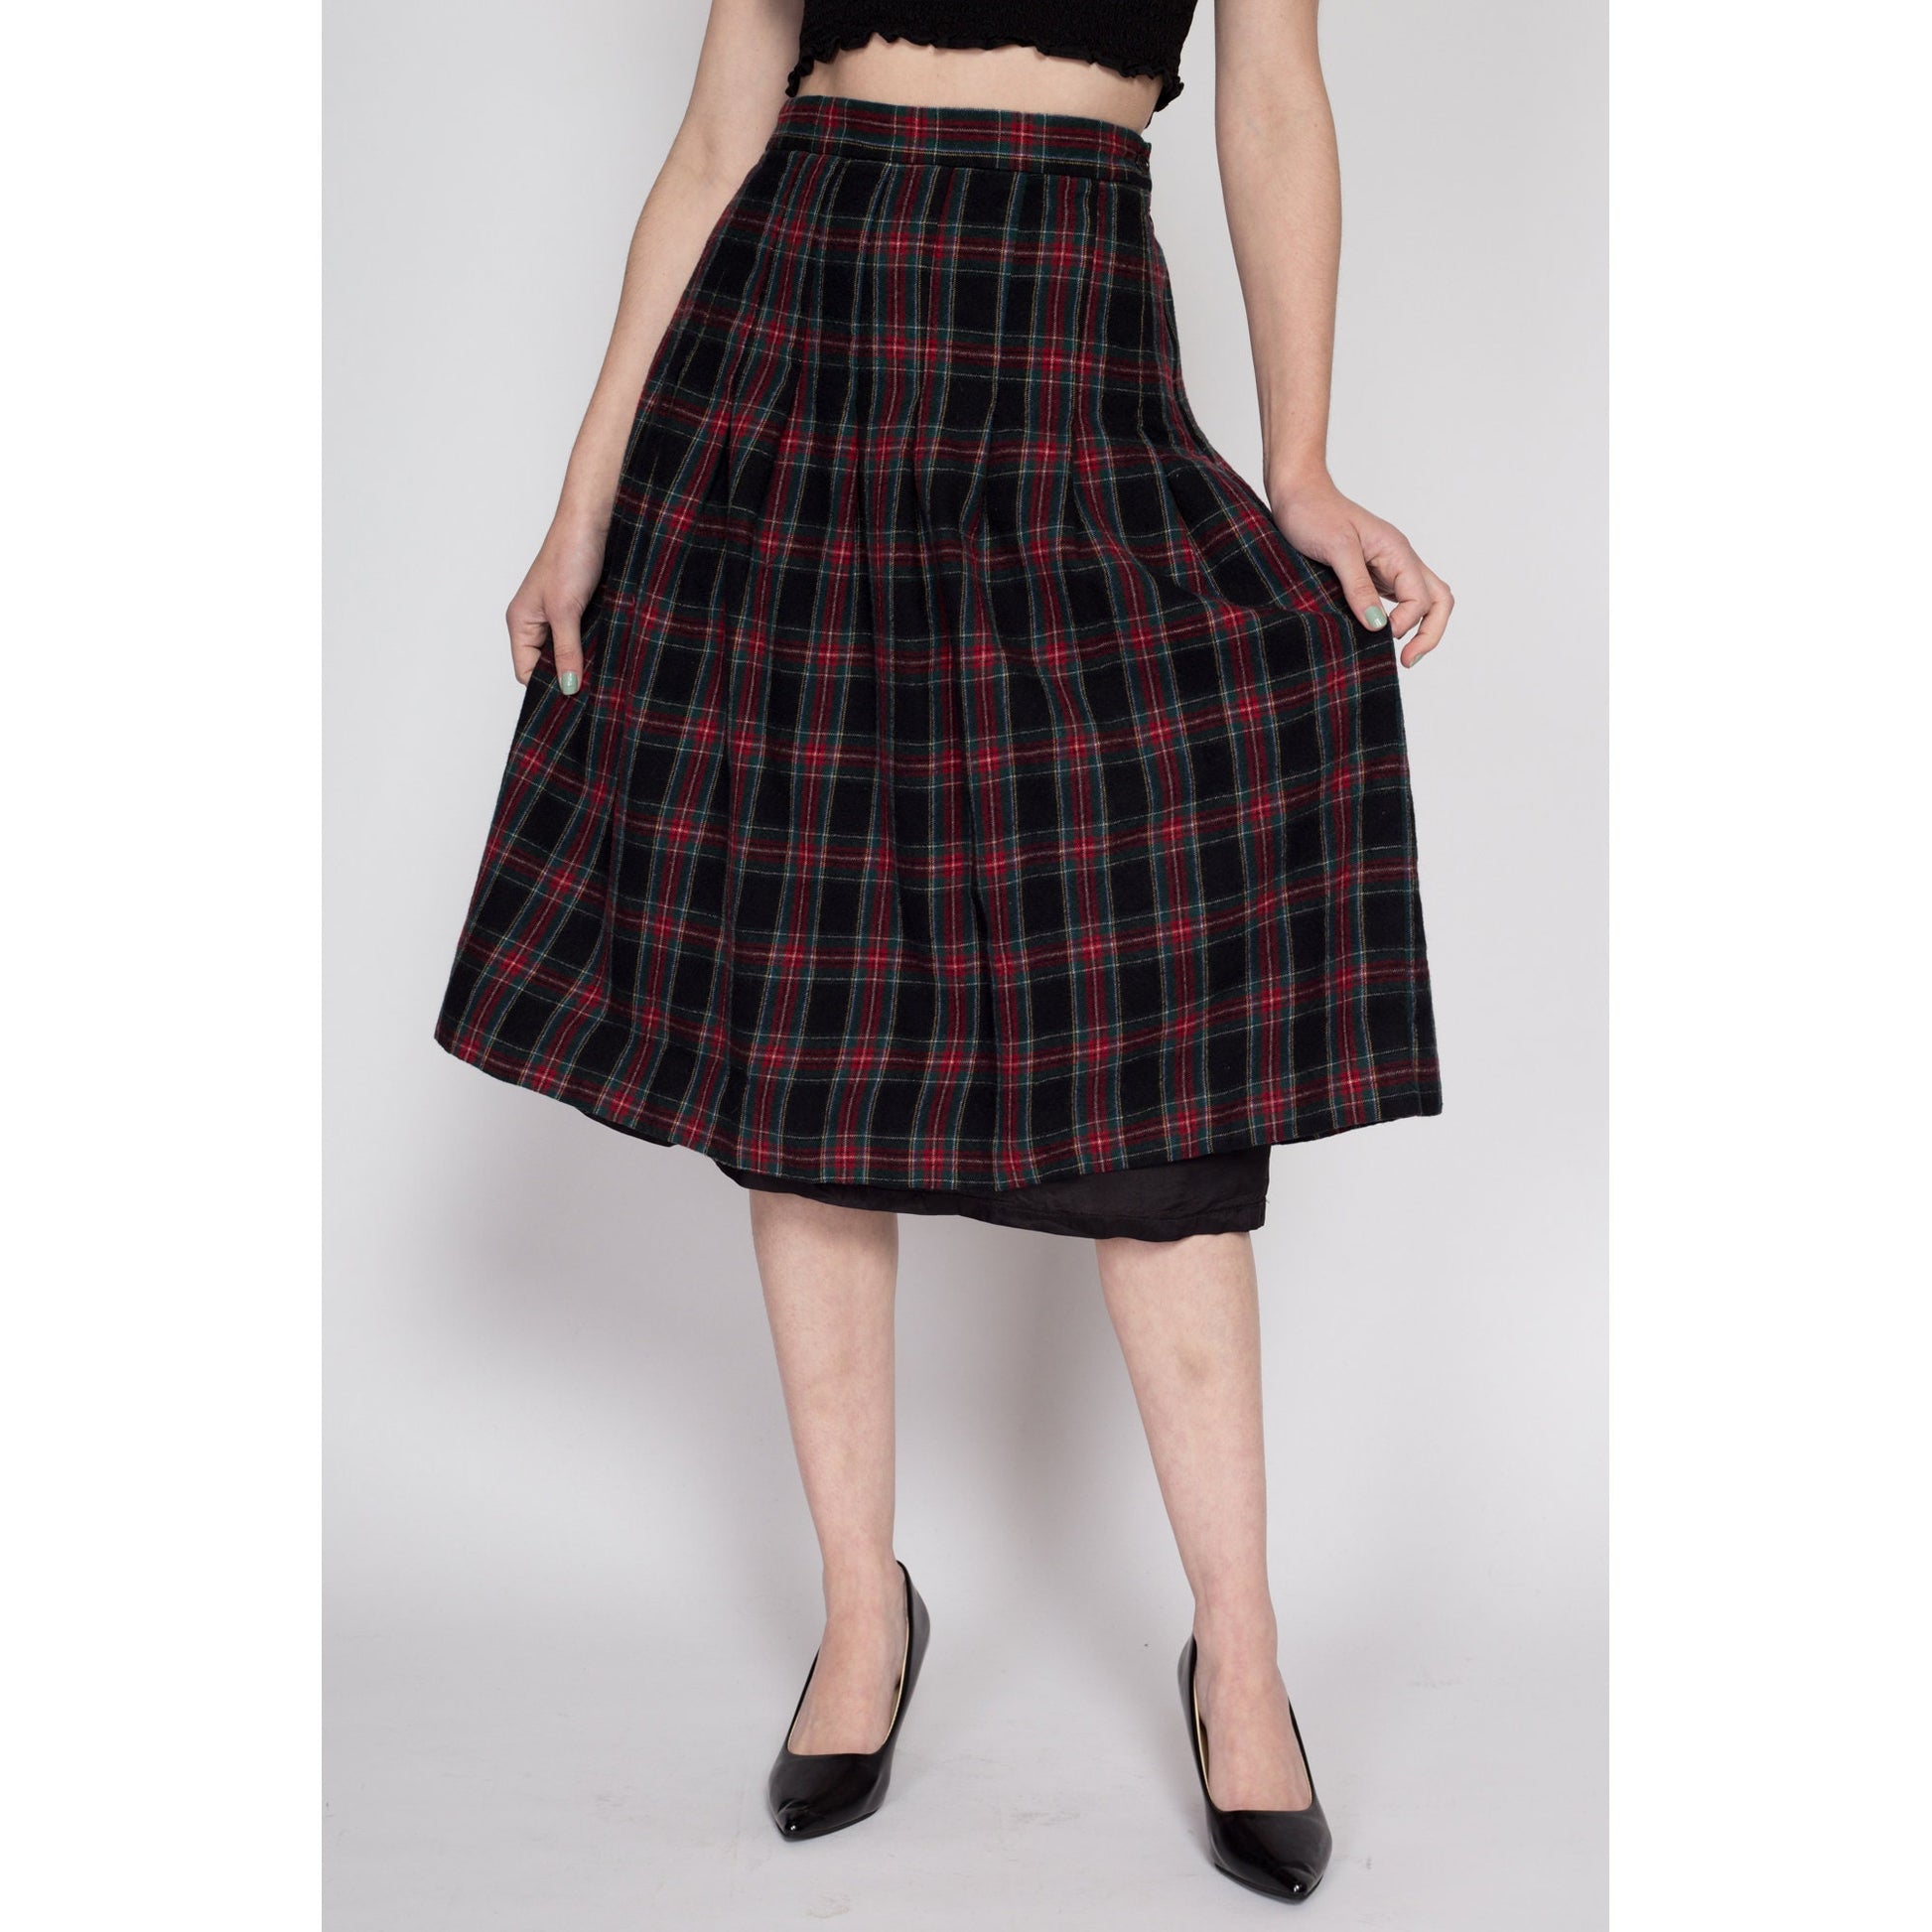 Medium 90s Black & Red Plaid Wool Midi Skirt 29" | Vintage L.L. Bean Pleated High Waisted Preppy Schoolgirl Skirt